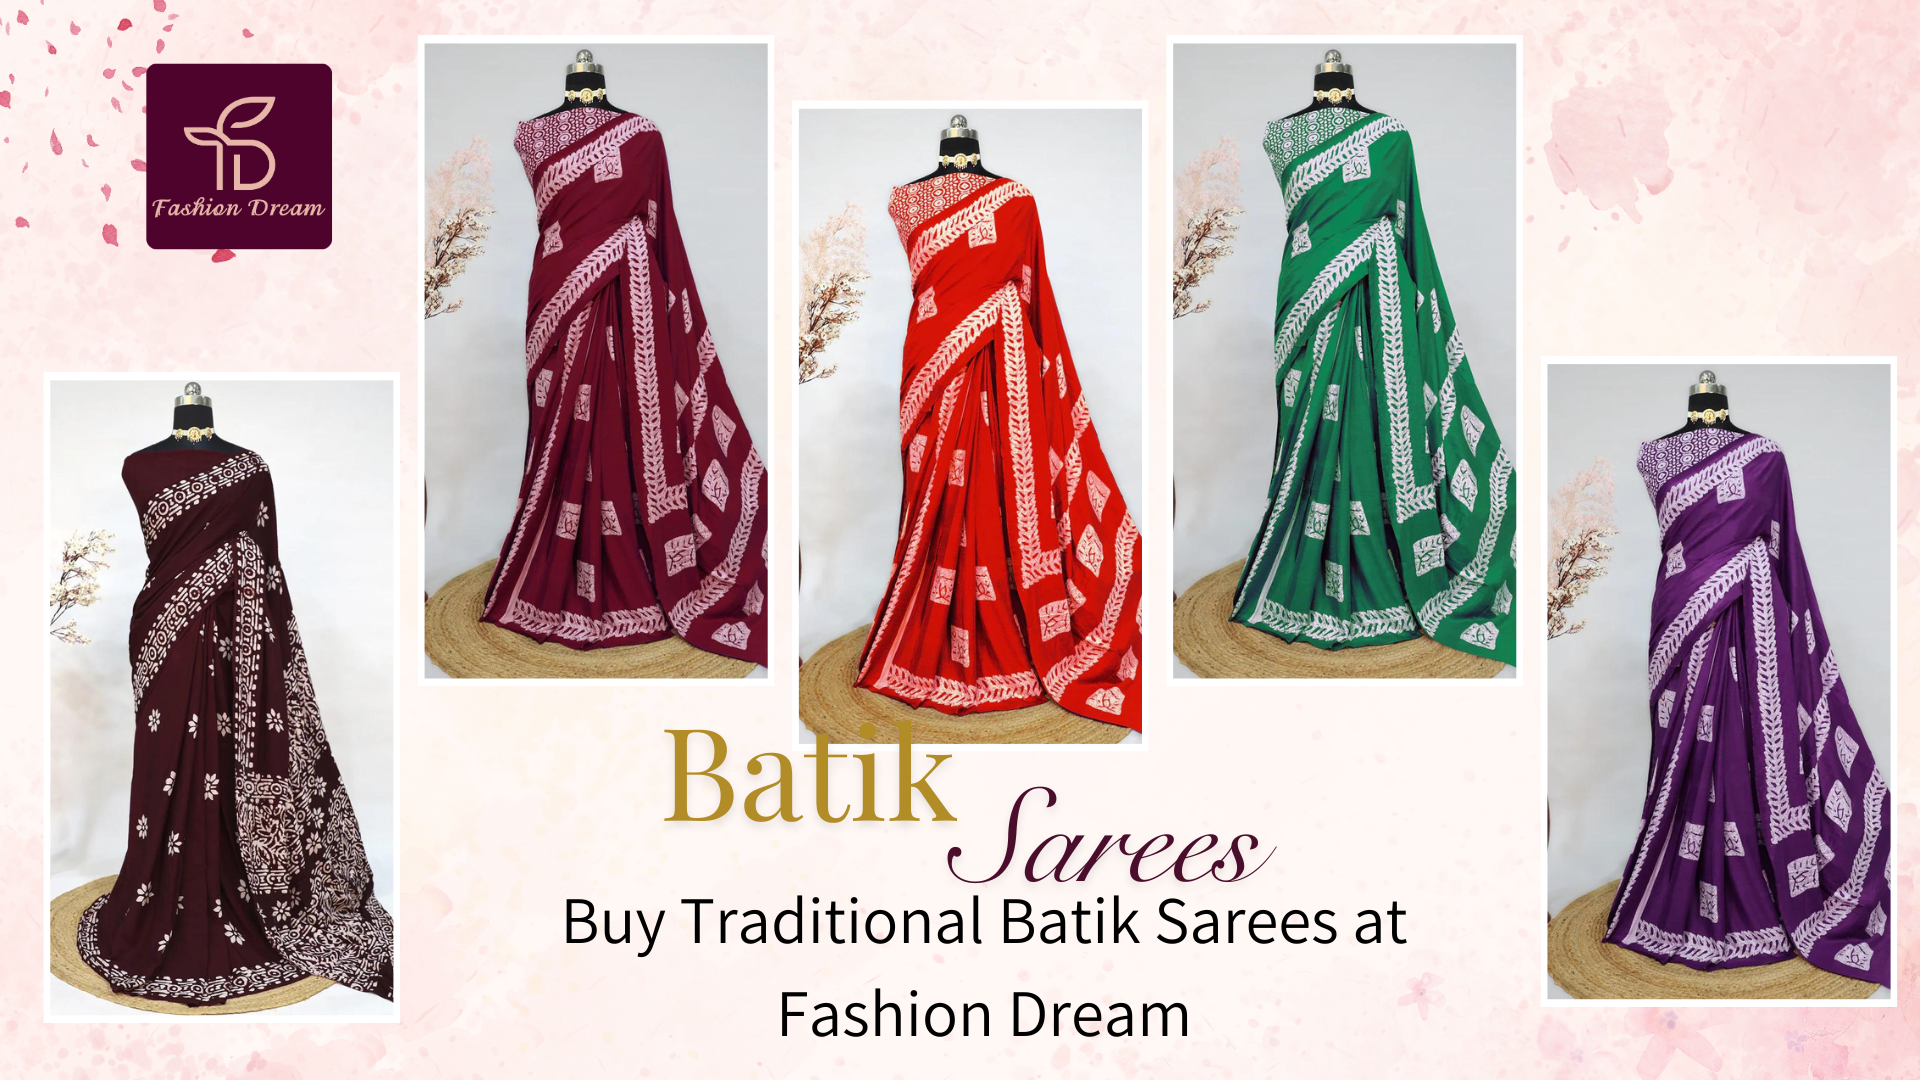 Buy Traditional Batik Sarees at Fashion Dream